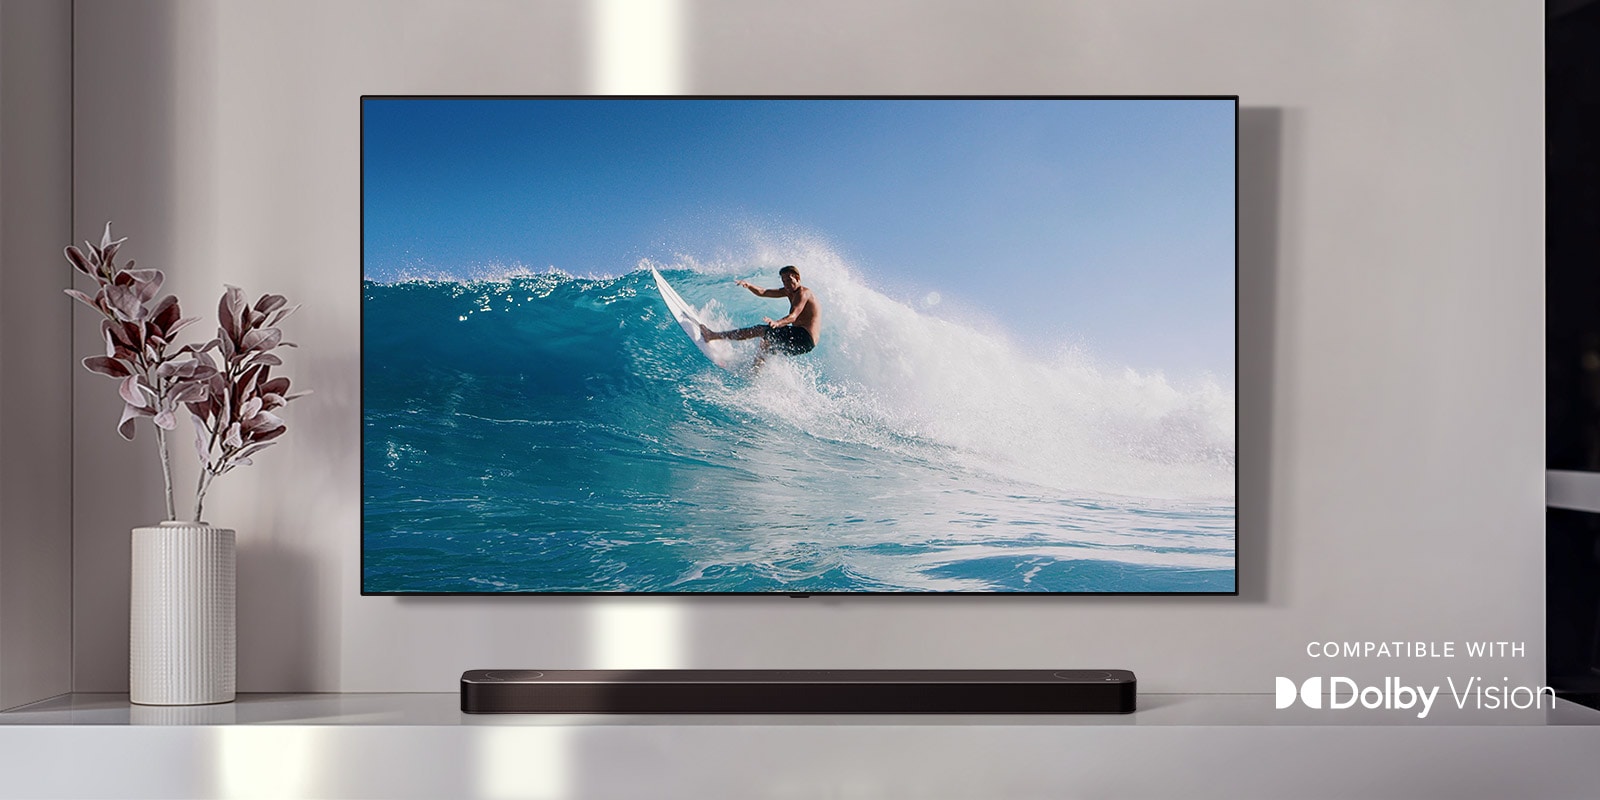 TV je na stěně. TV zobrazuje muže surfujícího na velké vlně. LG soundbar je hned pod TV na bílé polici. Vedle soundbaru je váza s květinami. (přehrát video)